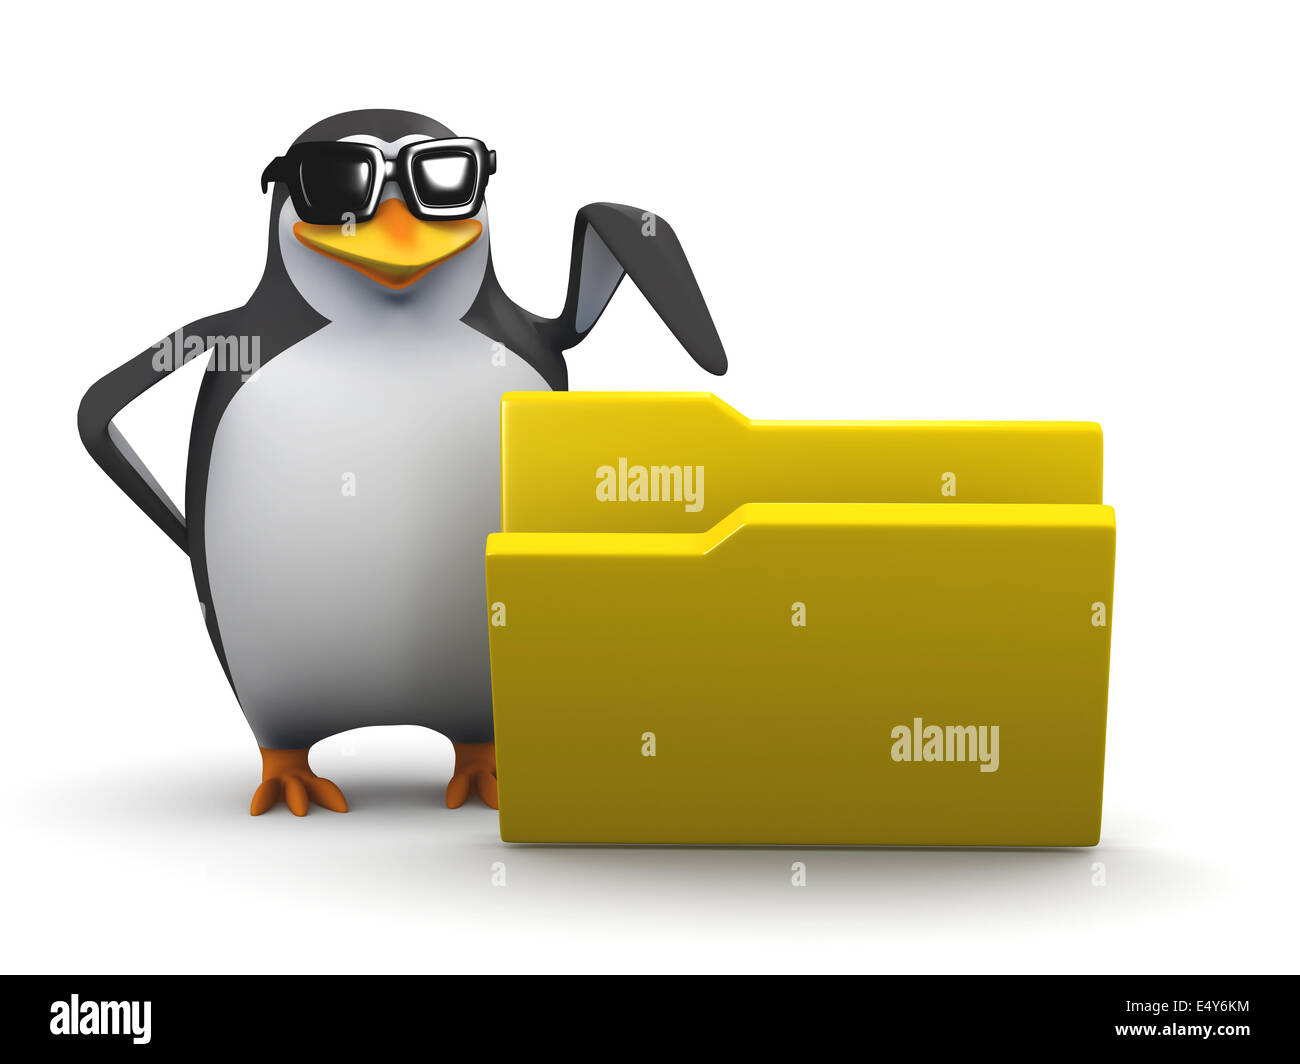 Пингвин 3 6